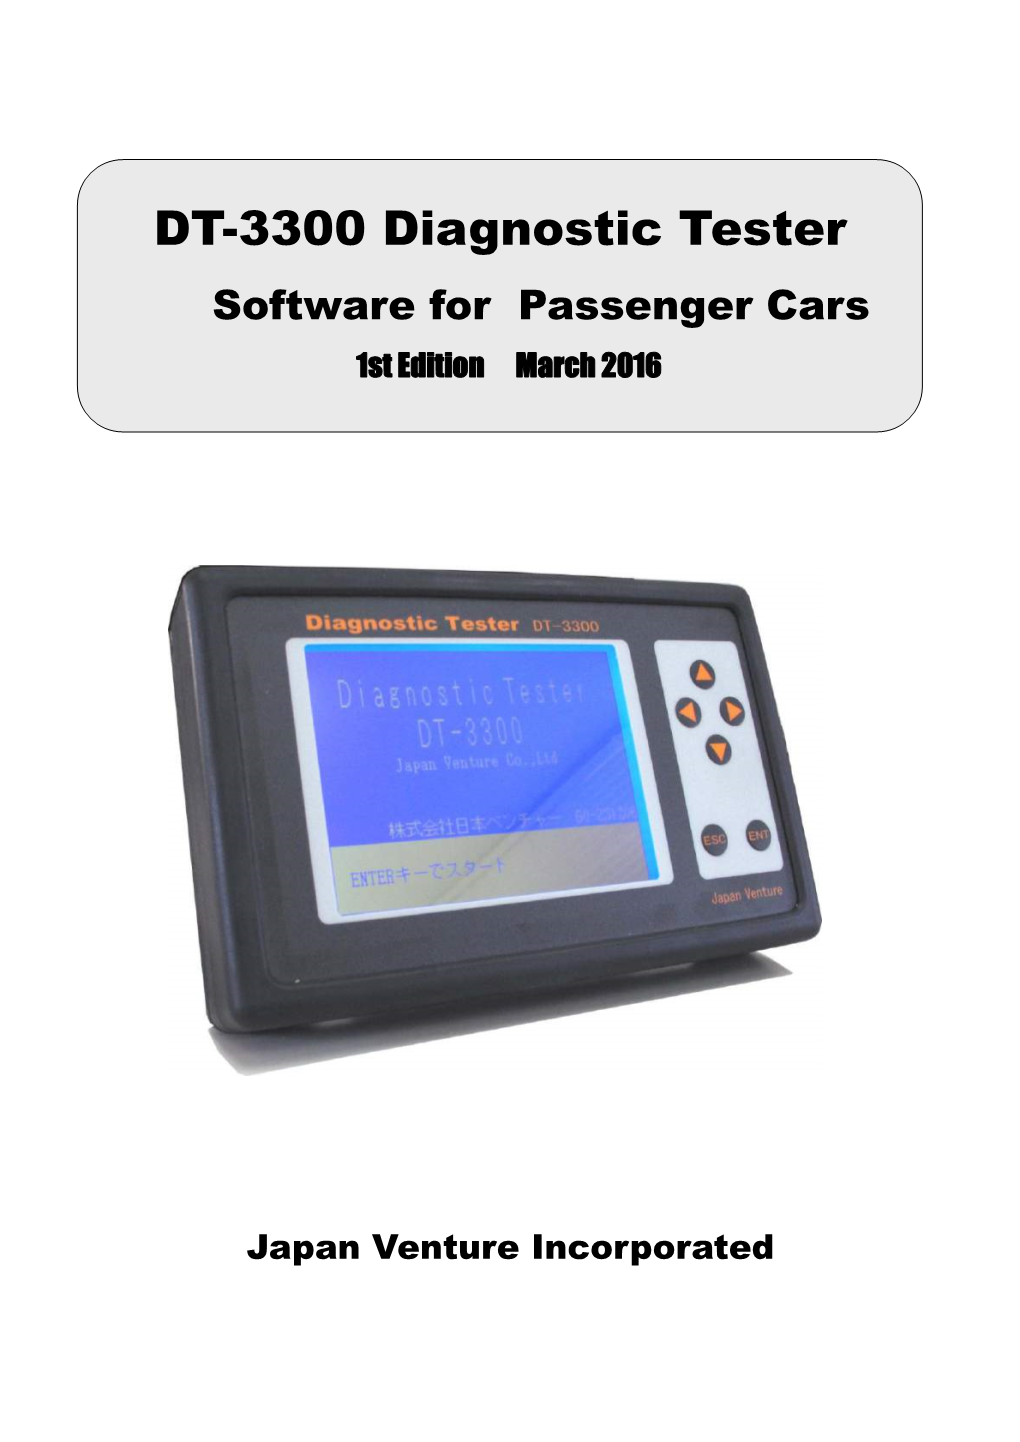 DT-3300 Diagnostic Tester